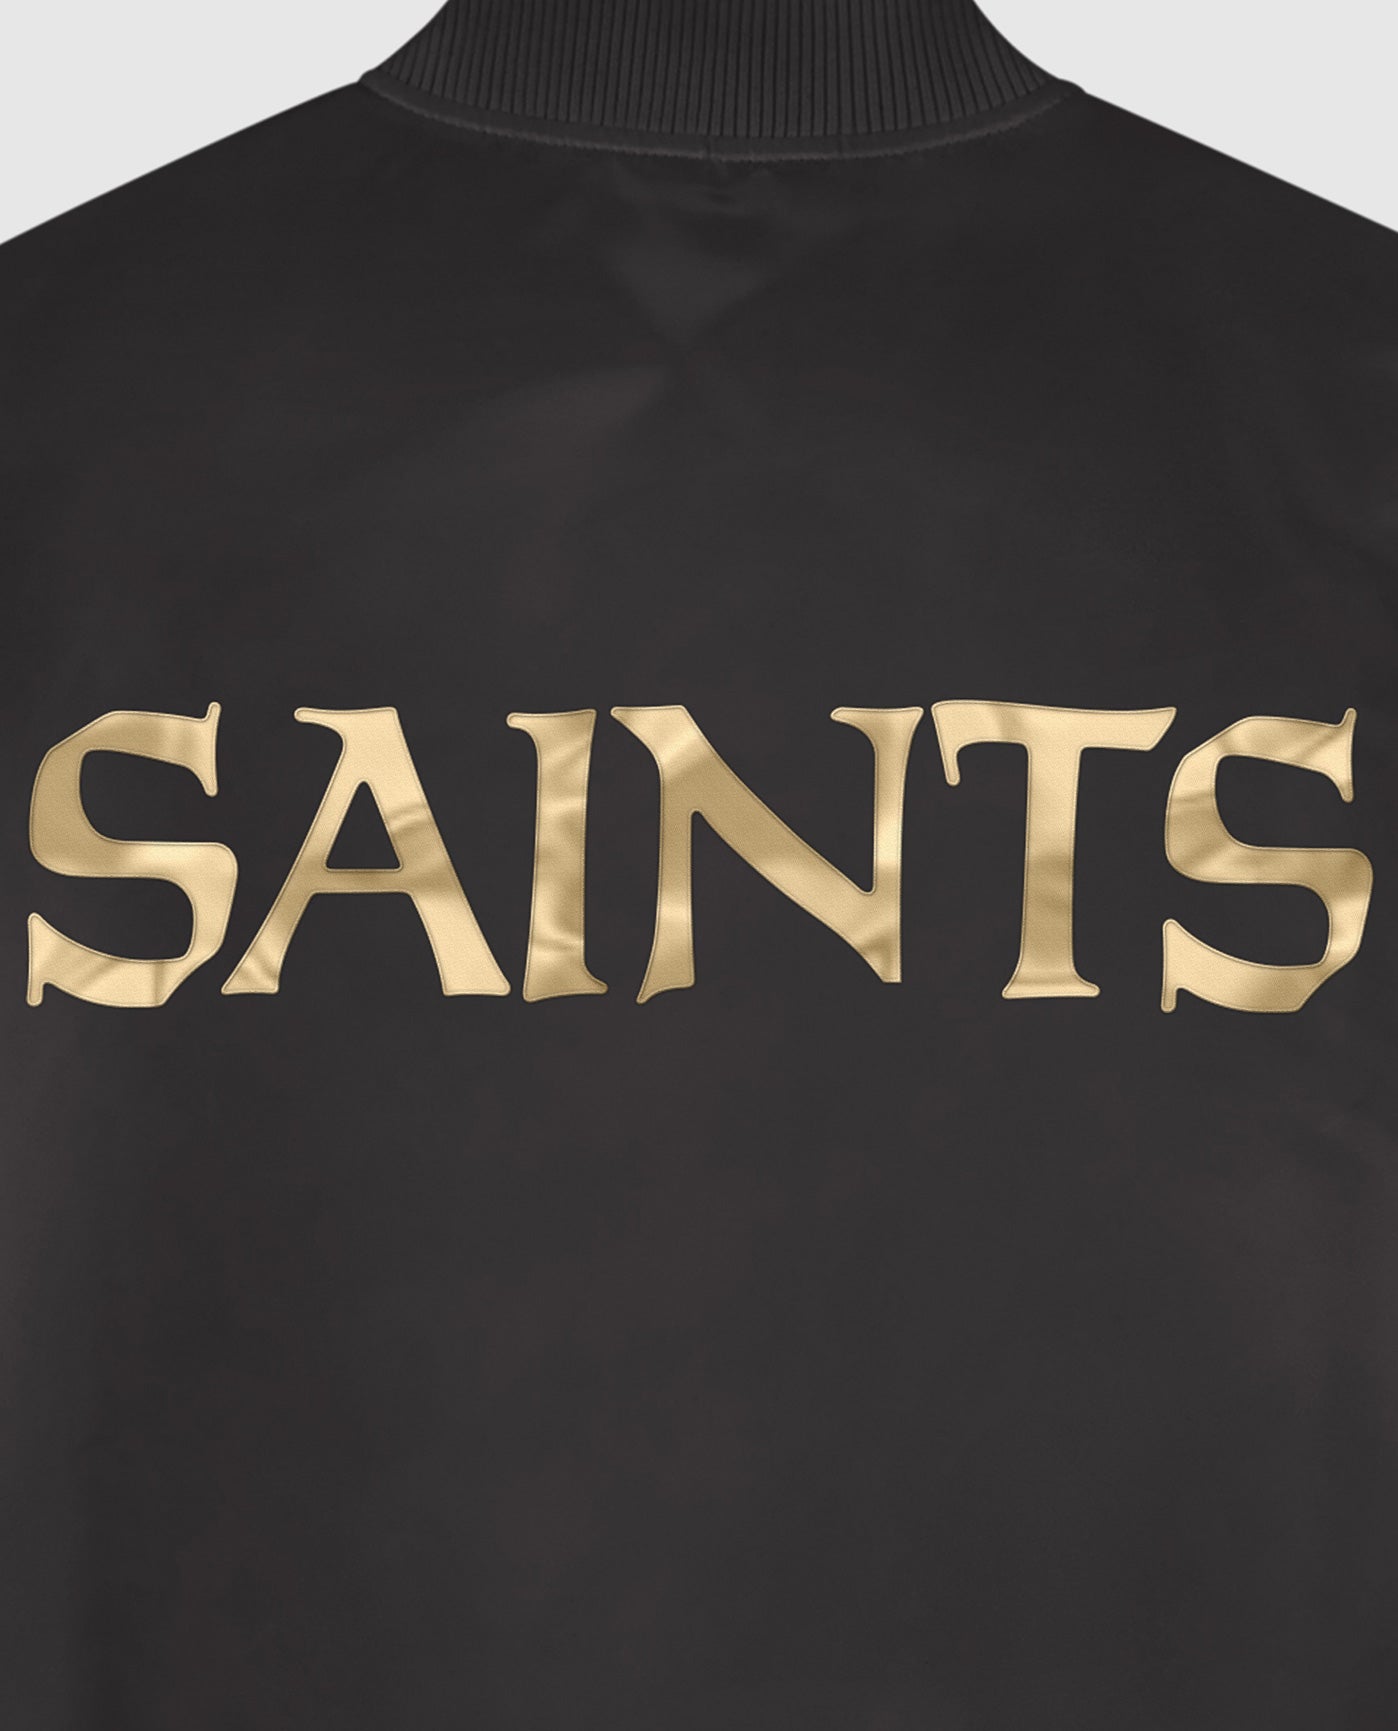 New Orleans Saints Team Name Twill Applique | Saints Black